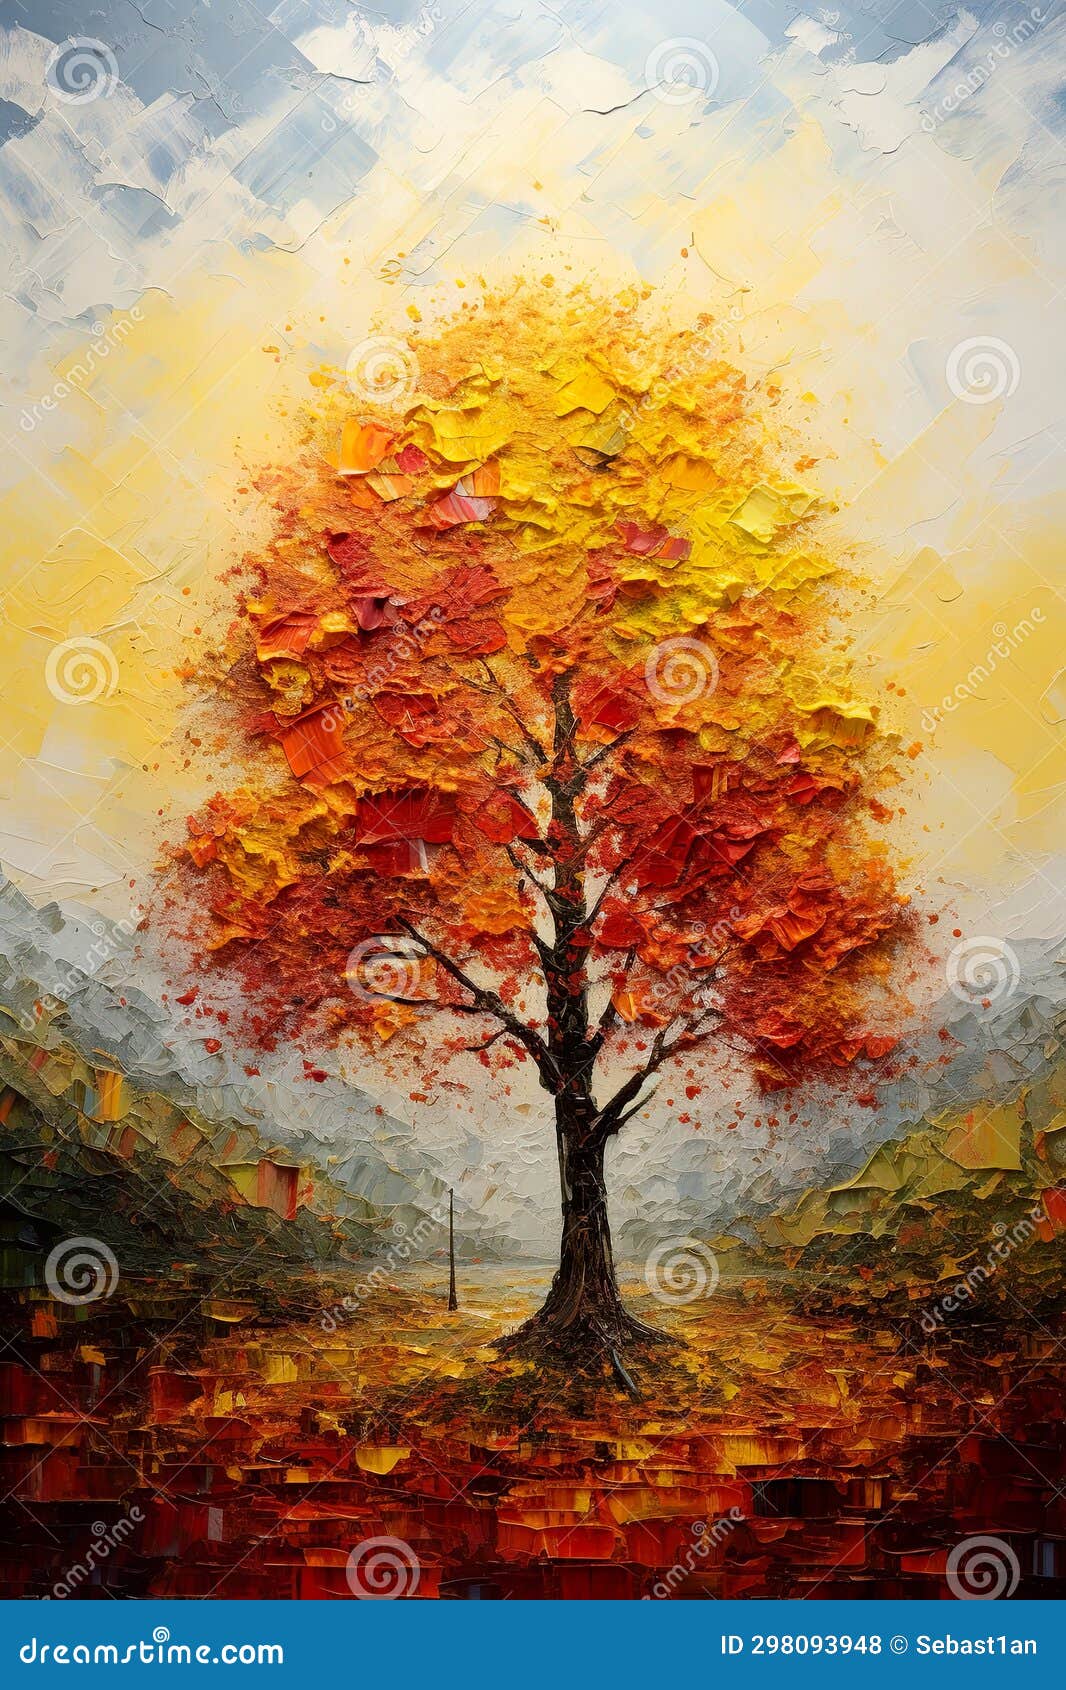 гармония с этой полотняной картиной, изображающей яркое одиночное дерево в оживленном пейзаже. мазки художников создают художественную и спокойную сцену, подчеркивающую яркую палитру и безмятежную атмосферу. аи